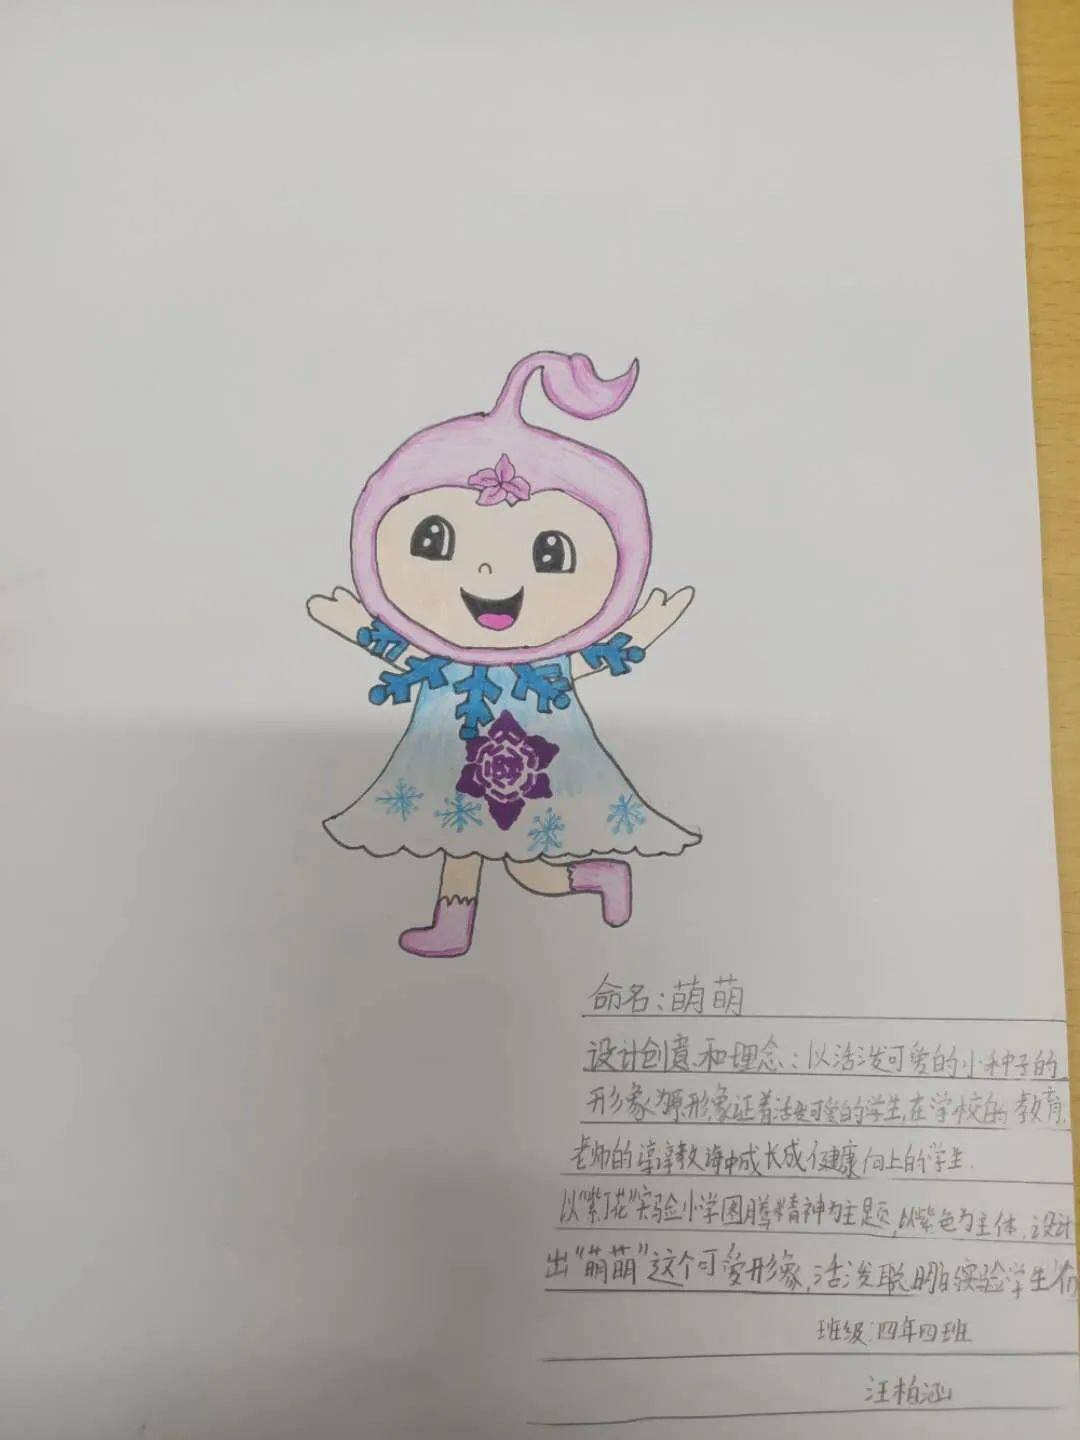 哈新区61实验视角我心目中的紫冰花哈尔滨市实验学校校园吉祥物征集